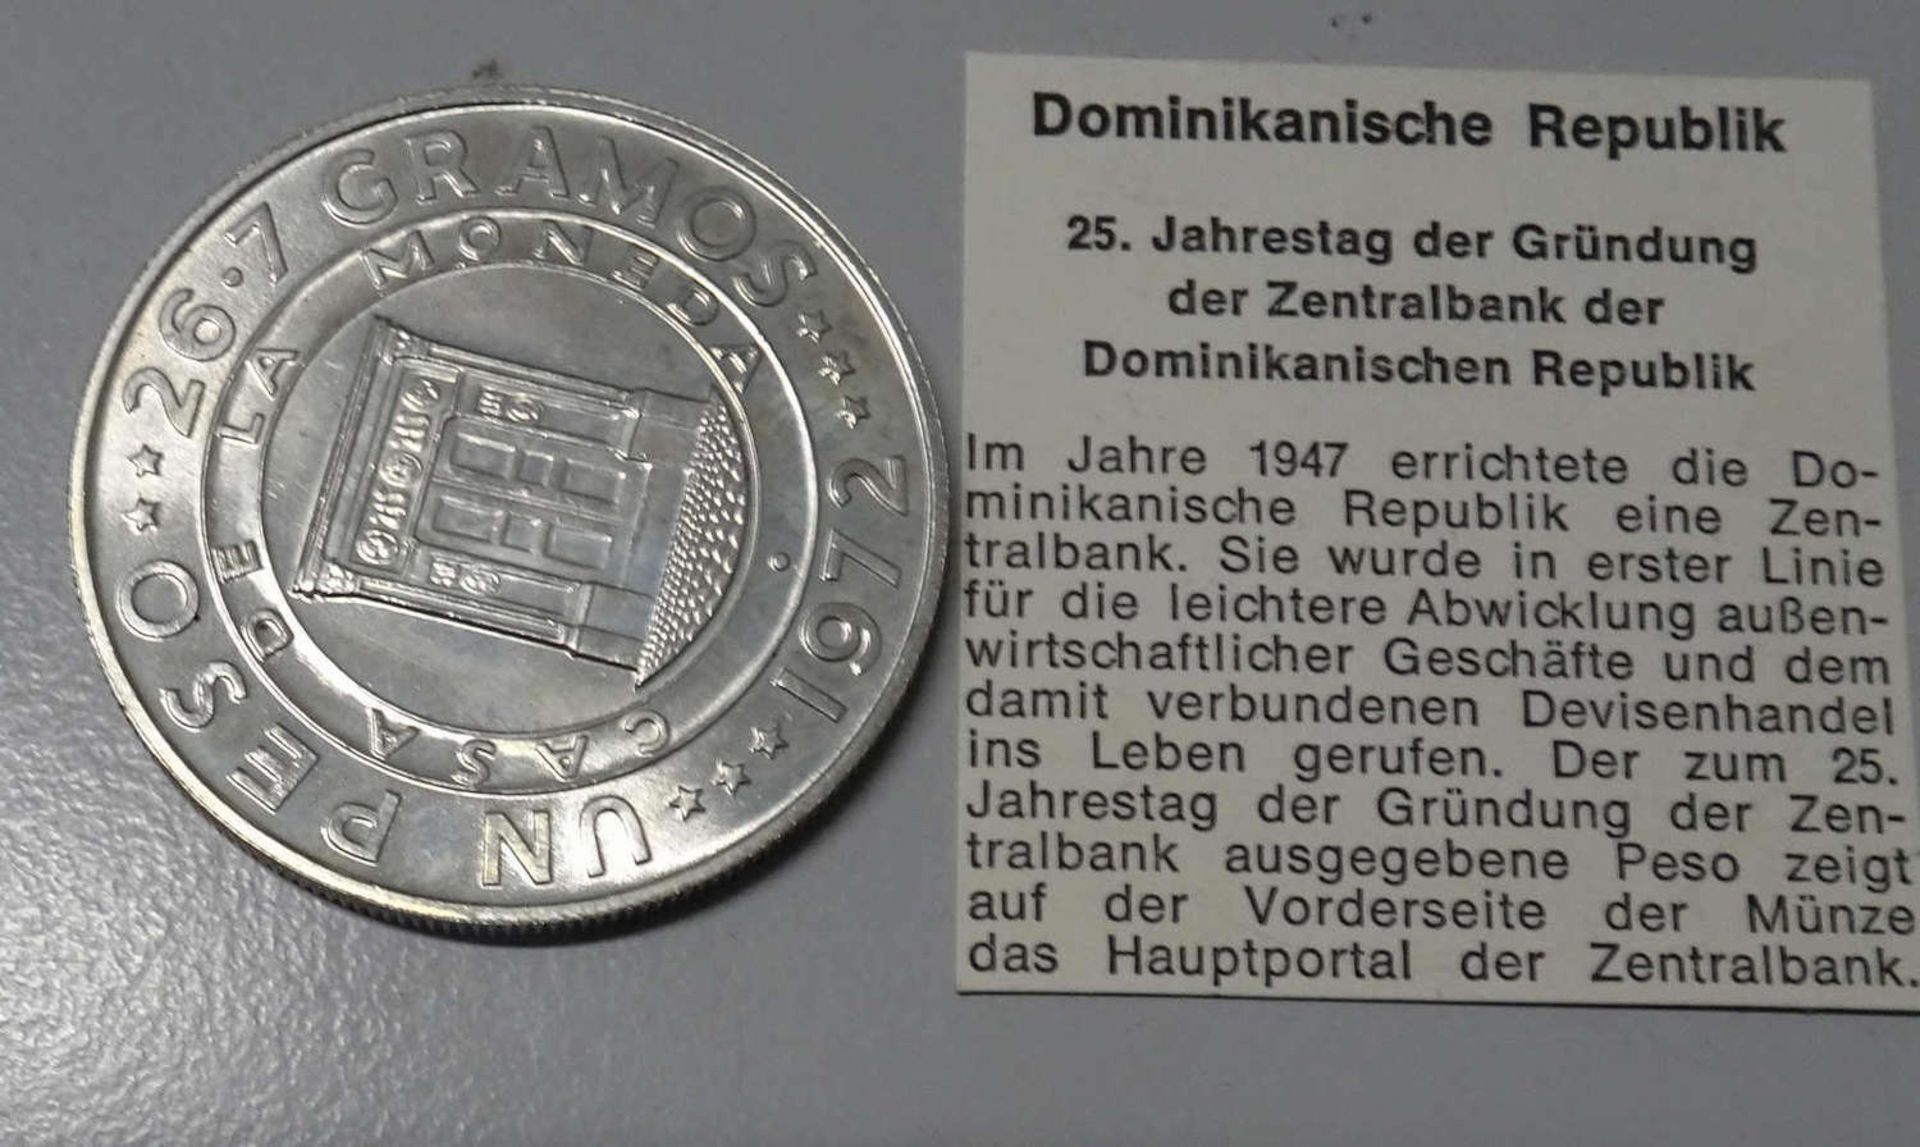 Dominikanische Republik, Silber. 1 Peso "25. Jahrestag der Gründung der Zentralbank der